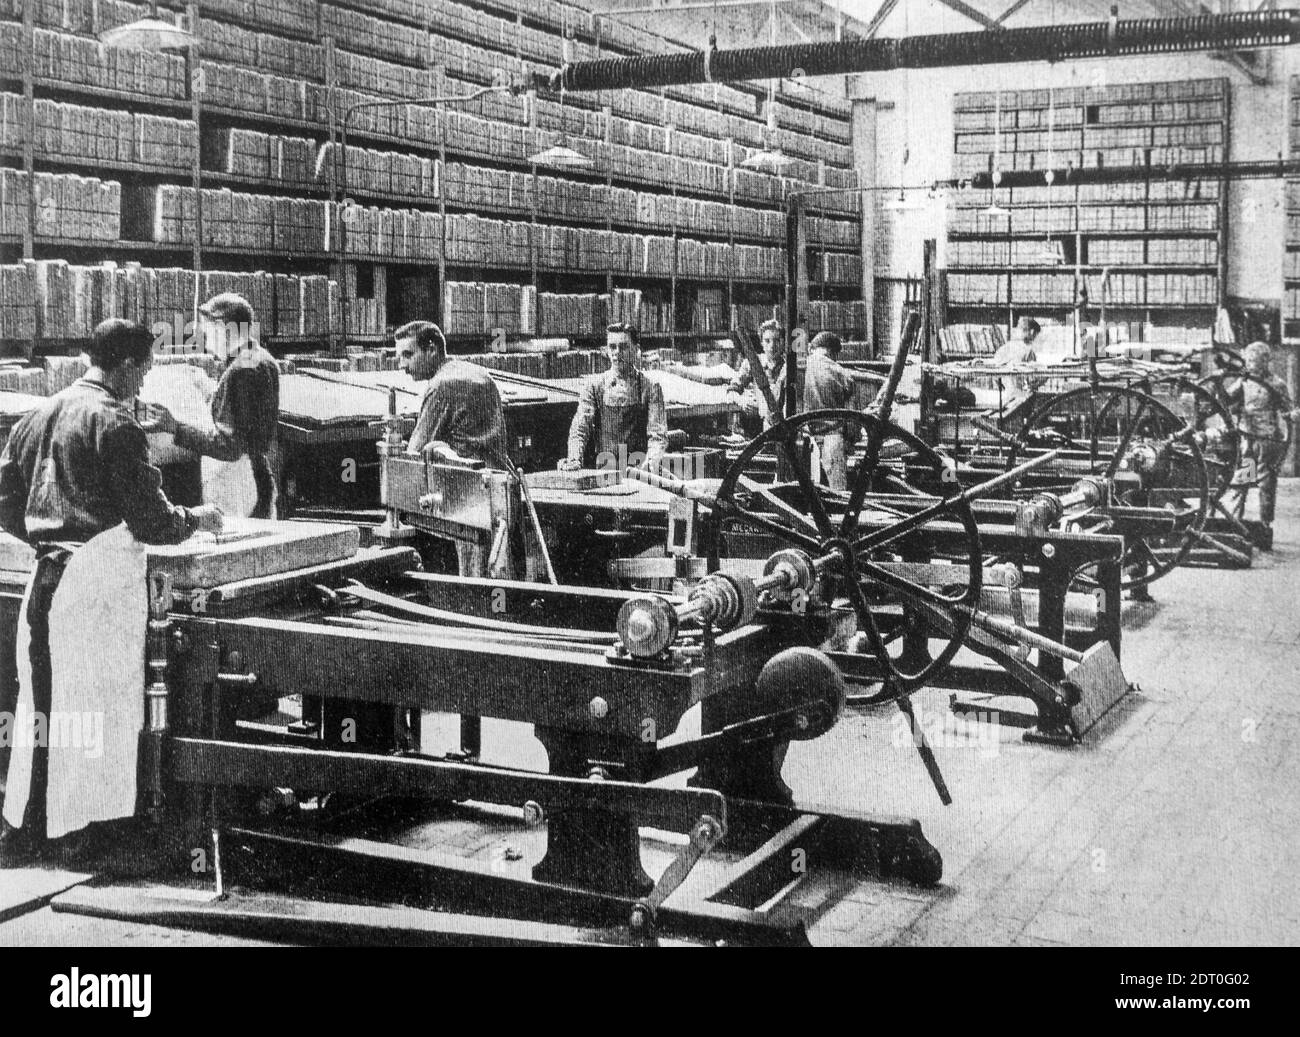 foto d'archivio in bianco e nero del 1890 che mostra i pressmen che lavorano stampatrici litografiche e rack per la conservazione di pietre litografiche sala stampa Foto Stock